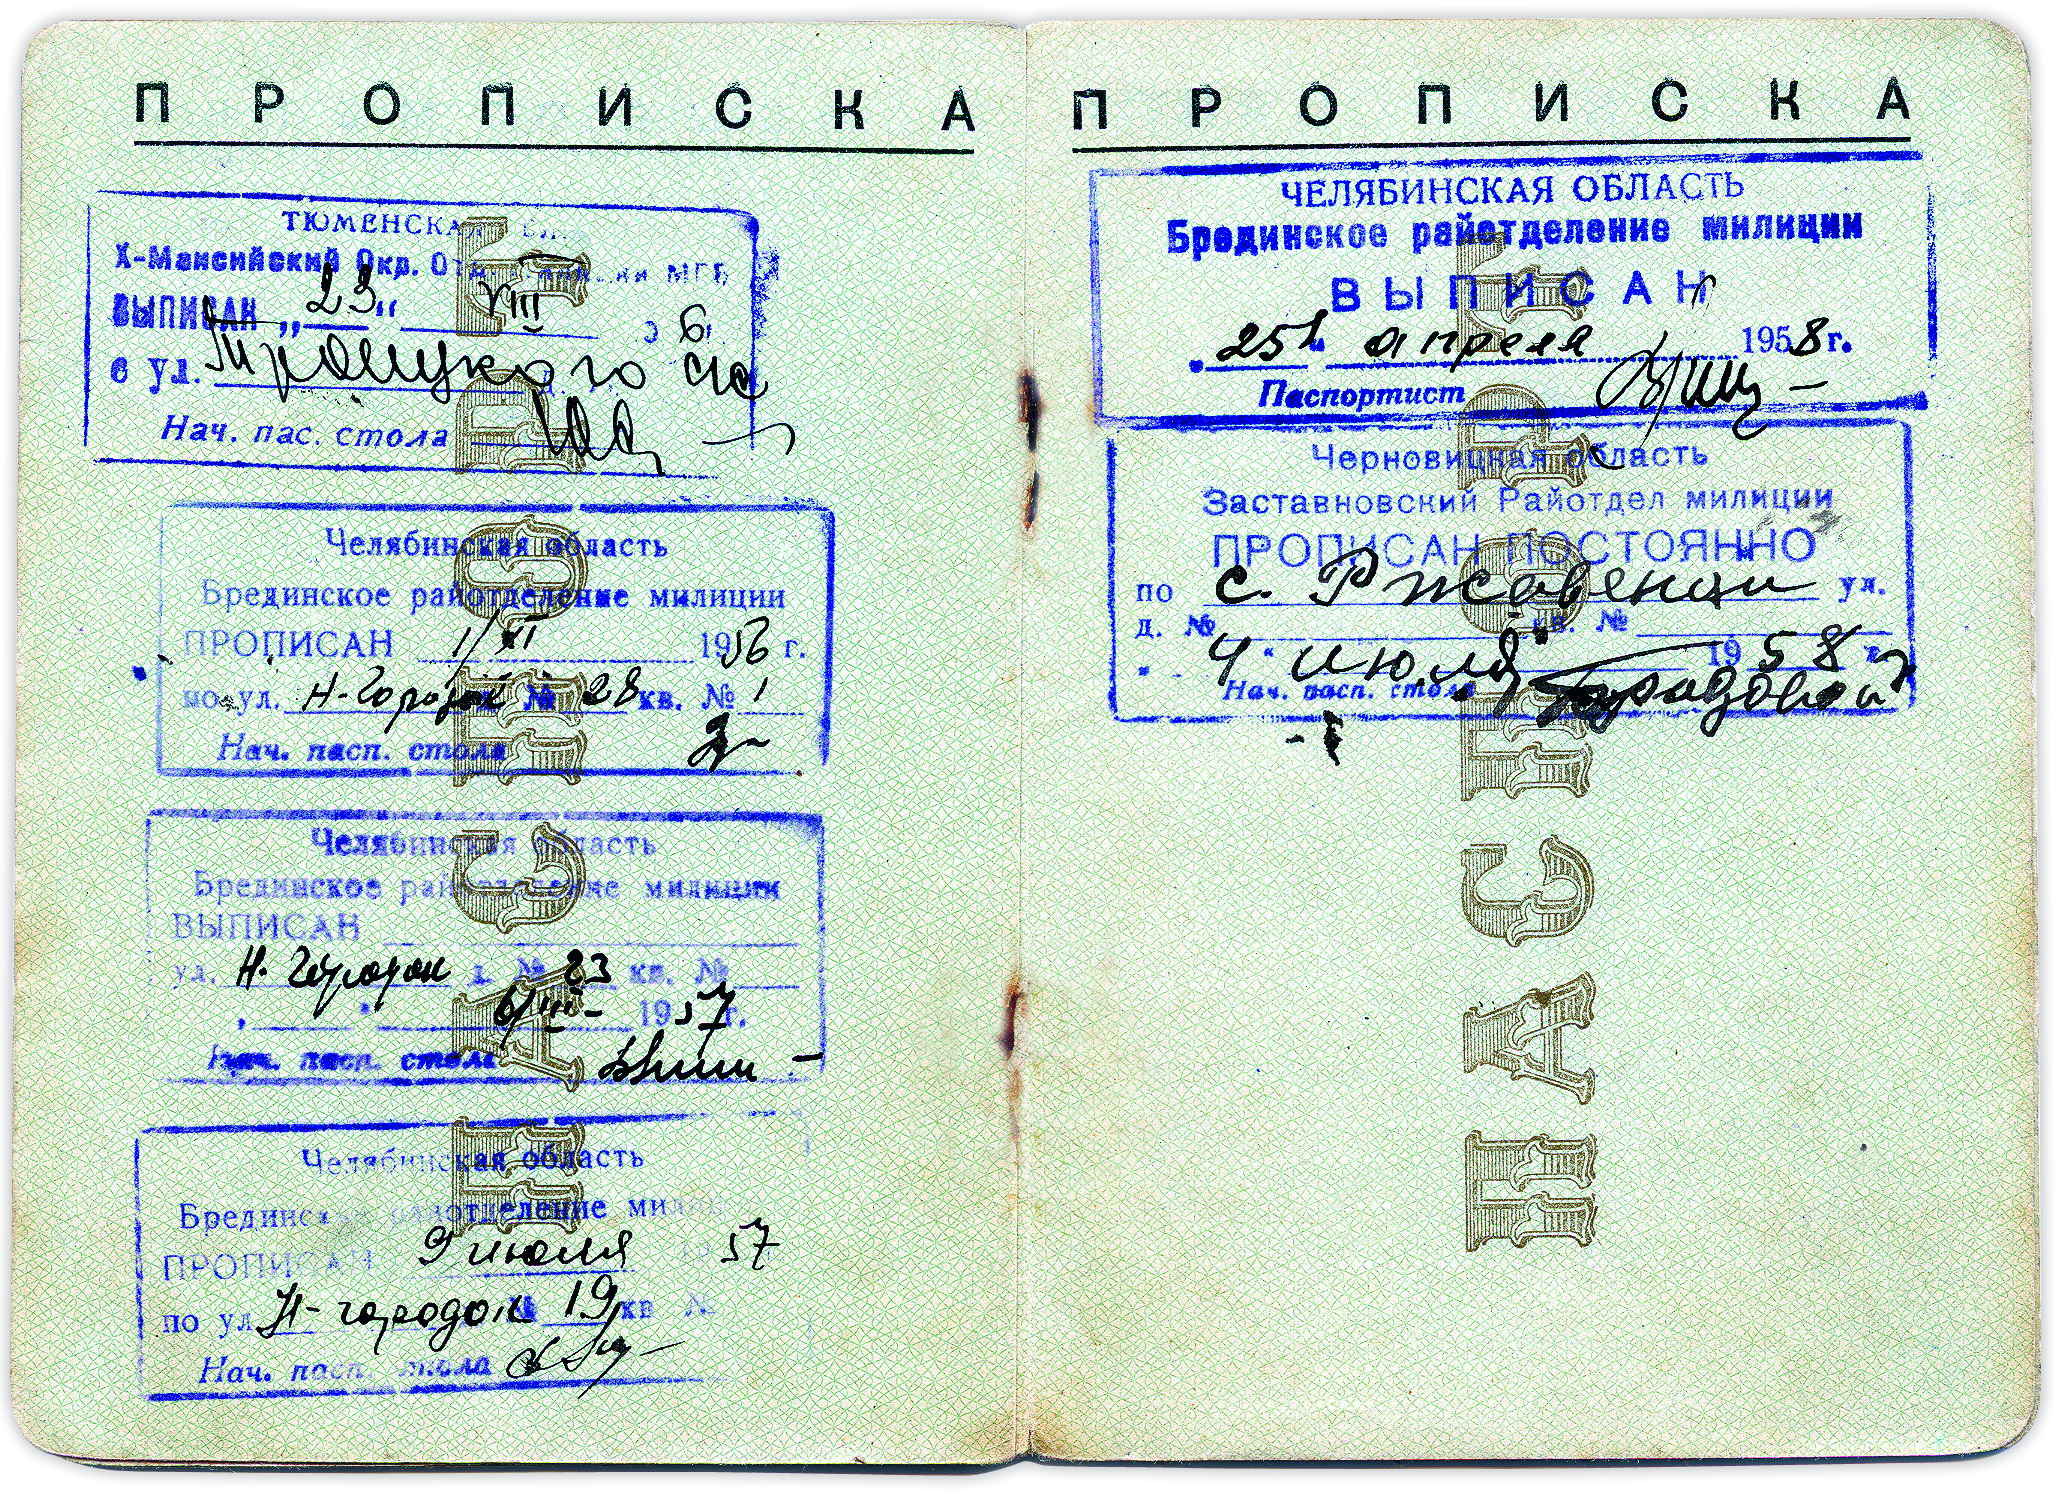 Паспортні відмітки про місце проживання. Фото надане автором